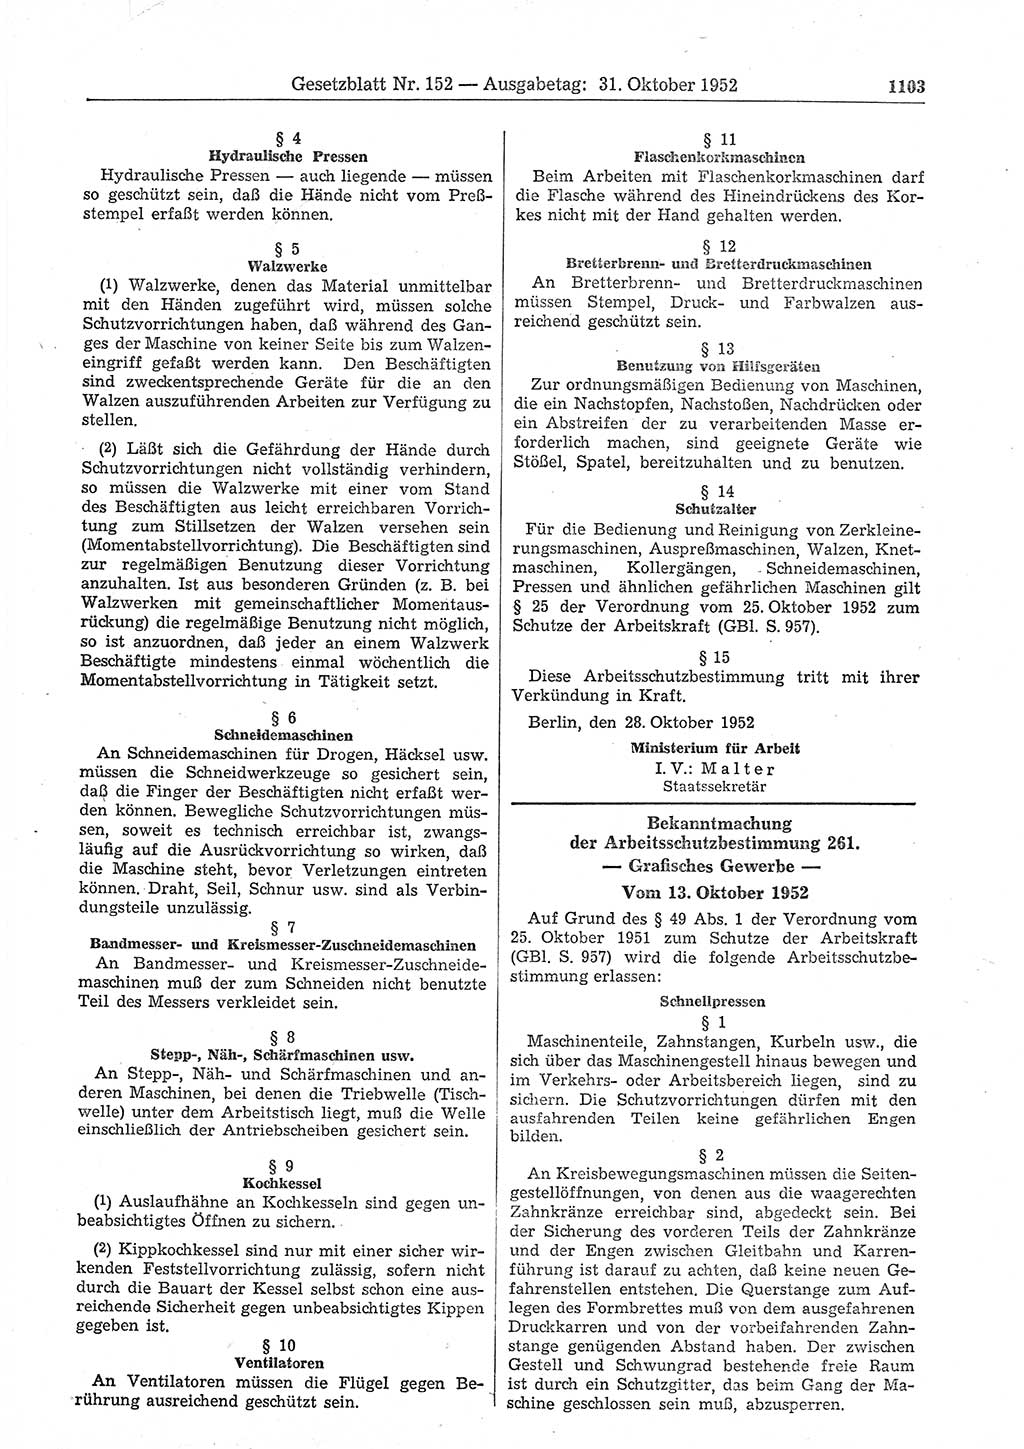 Gesetzblatt (GBl.) der Deutschen Demokratischen Republik (DDR) 1952, Seite 1103 (GBl. DDR 1952, S. 1103)